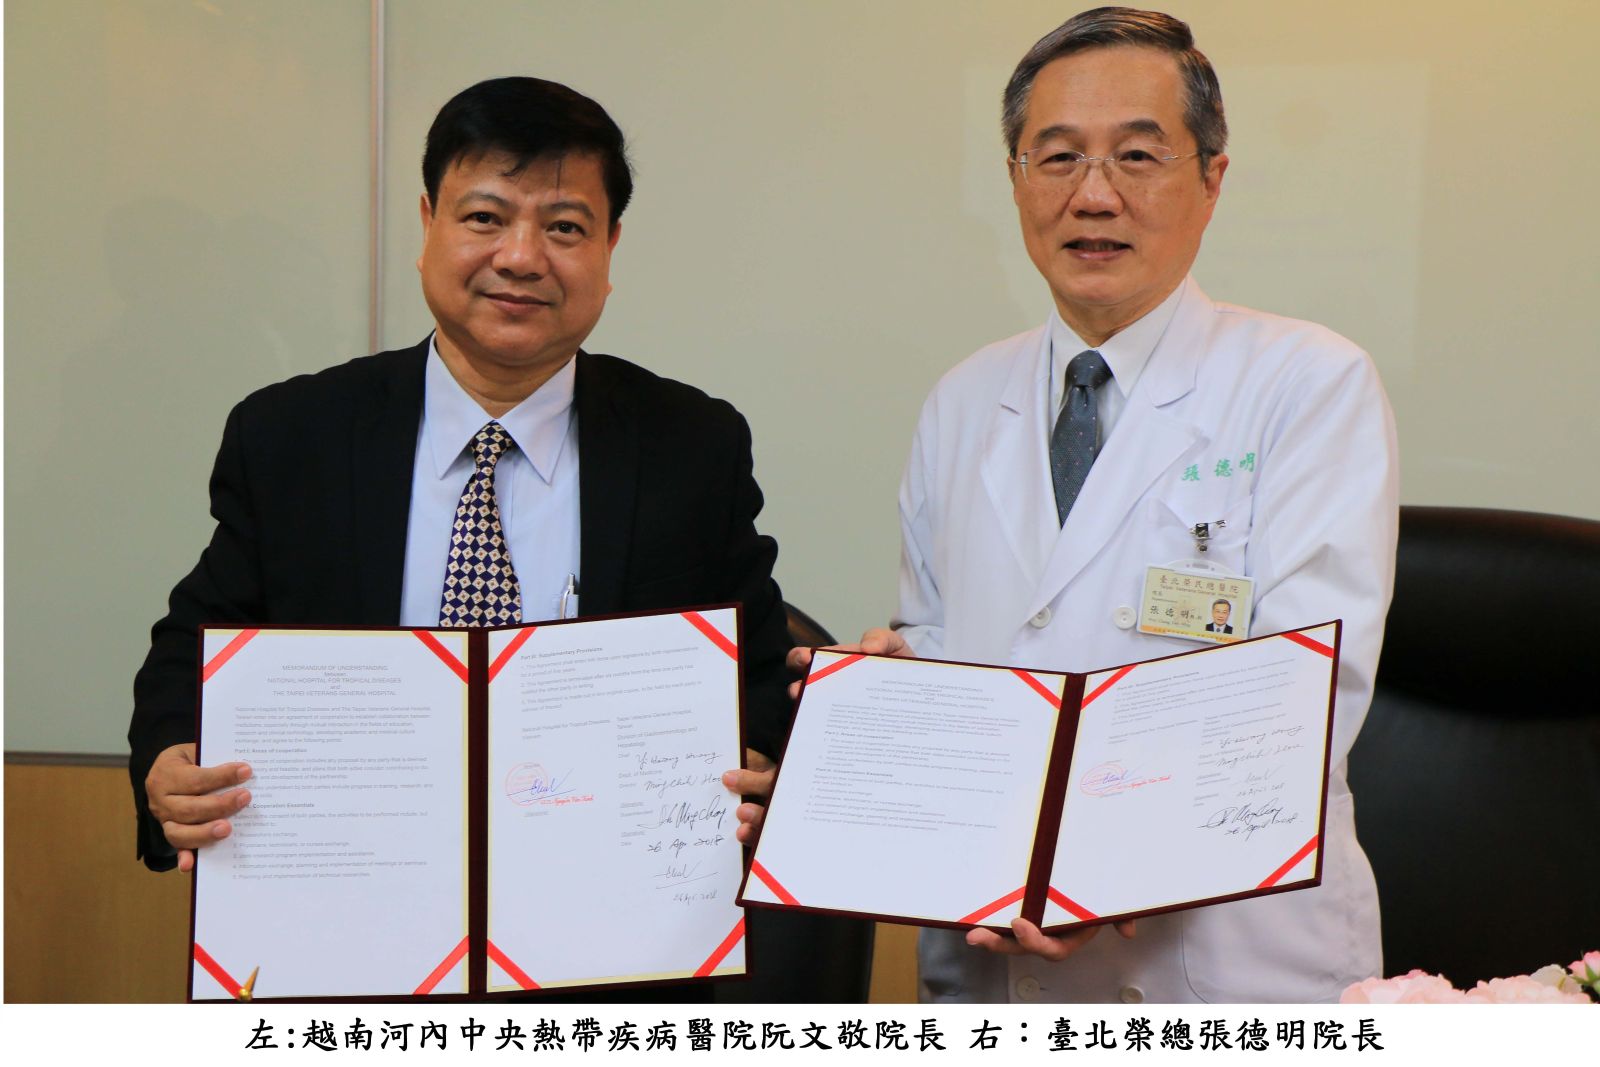 臺北榮總與越南中央熱帶疾病醫院 簽署合作備忘錄